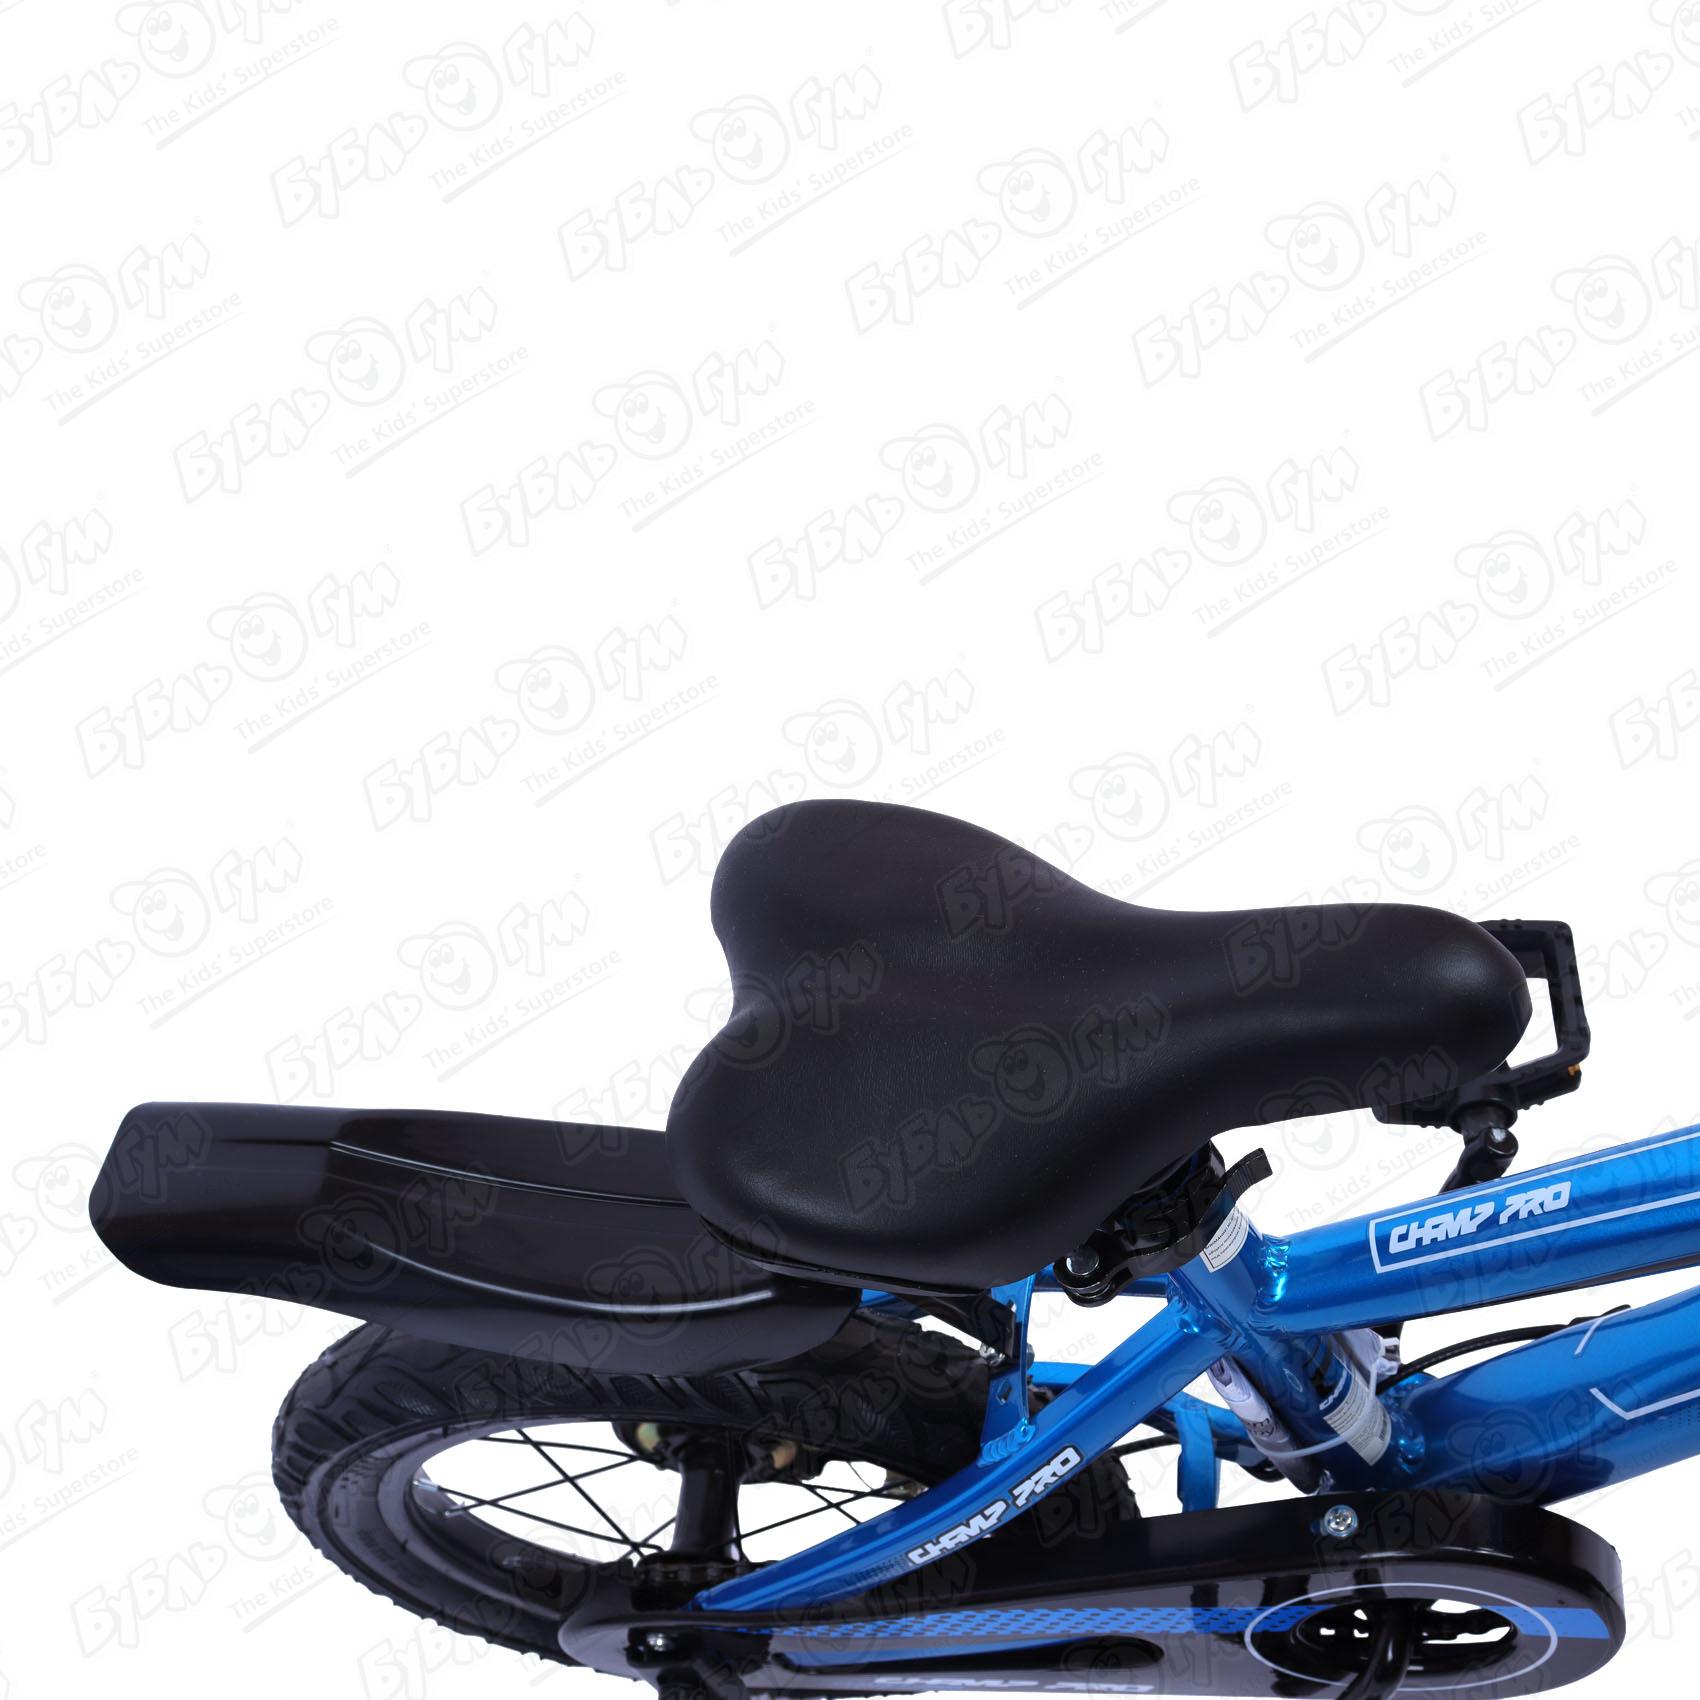 Велосипед Champ Pro детский B14 черно-синий - фото 8